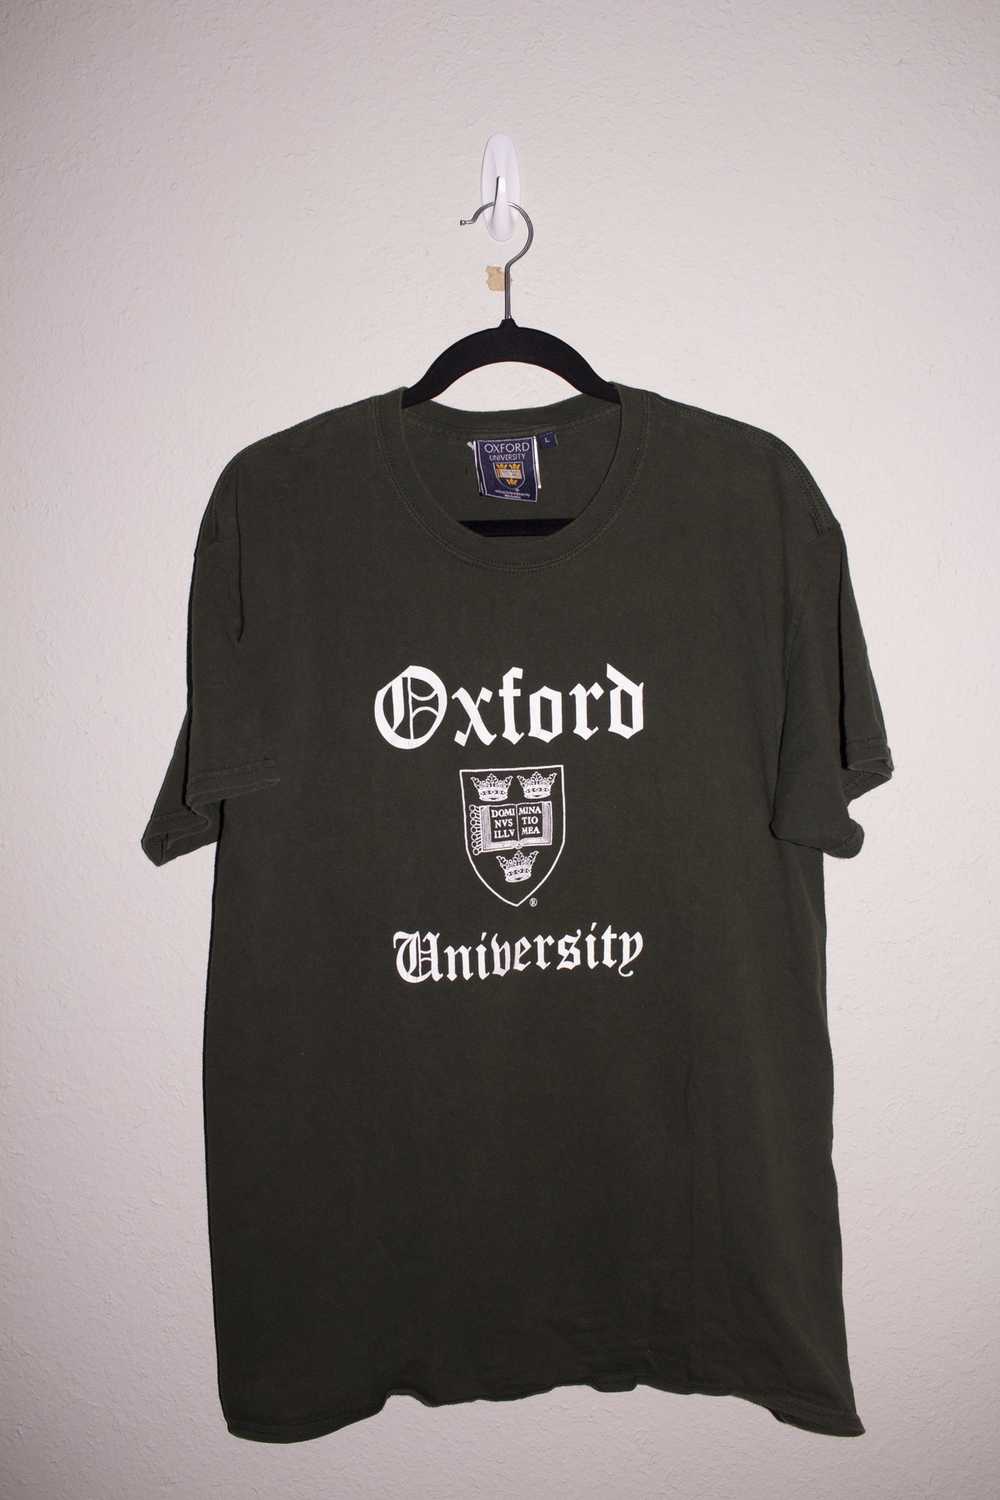 Vintage Vintage Oxford University (Forrest Green) - image 1